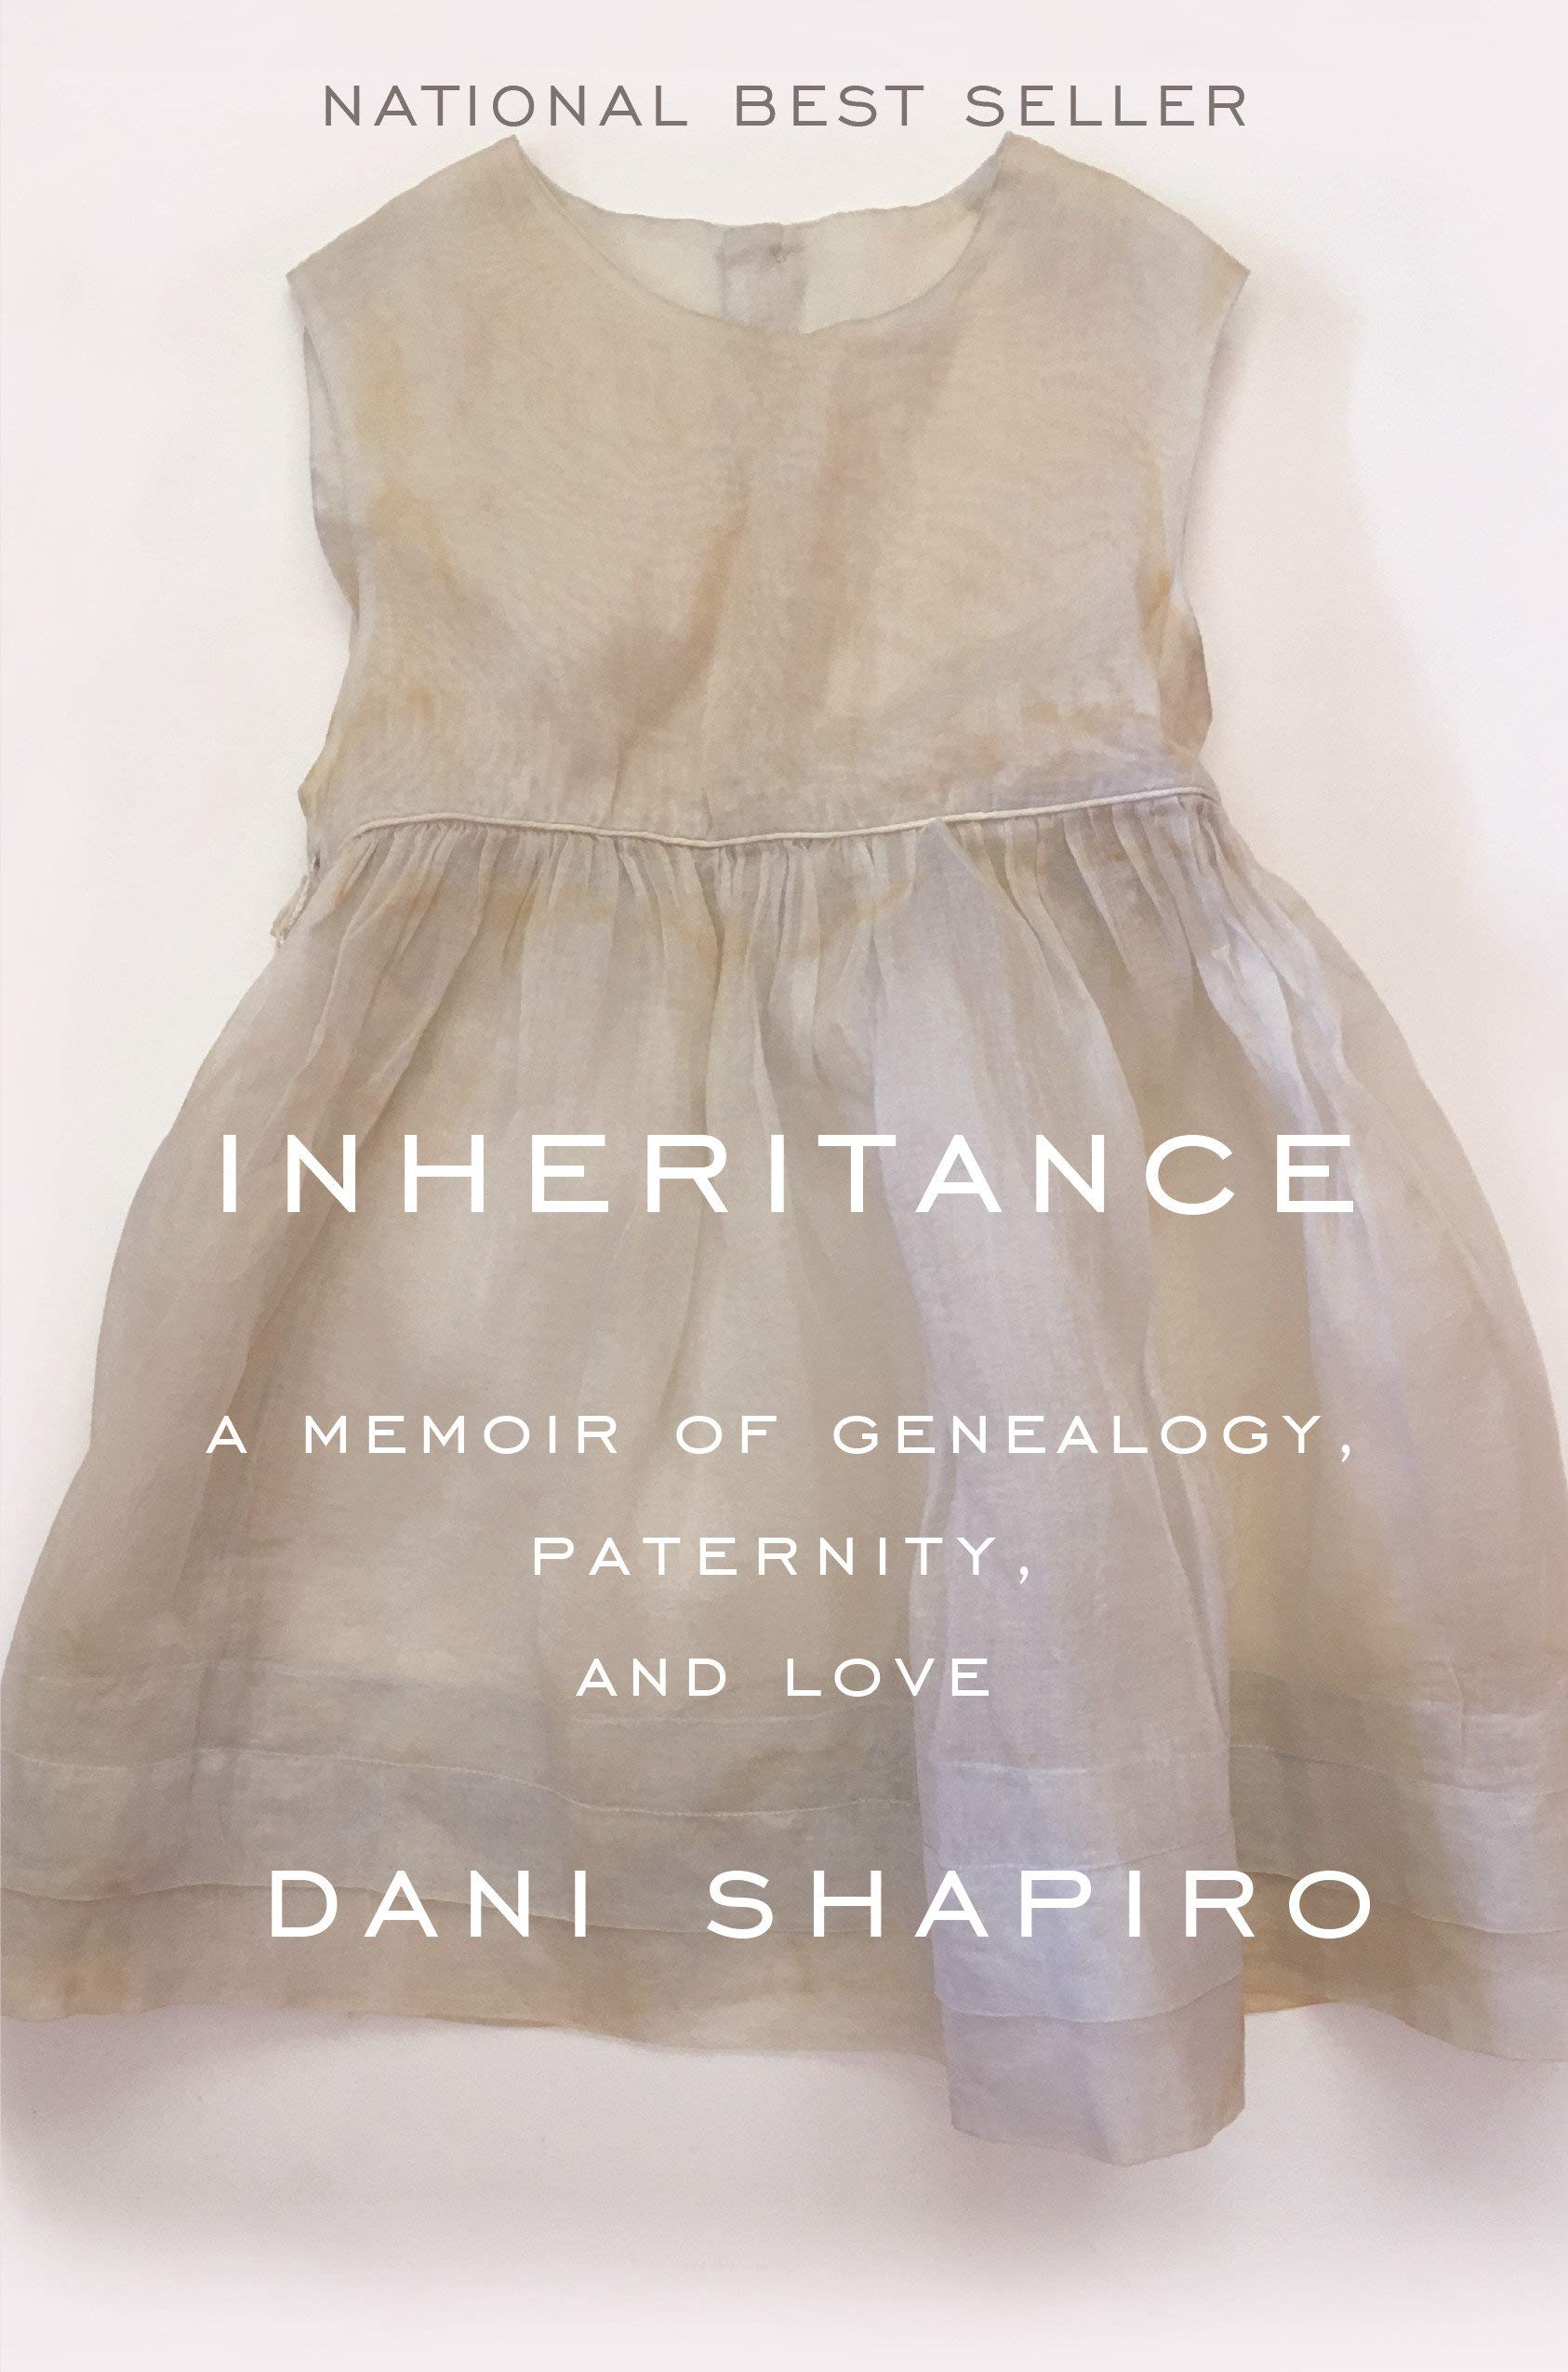 Cover of "Inheritance" by Dani Shapiro